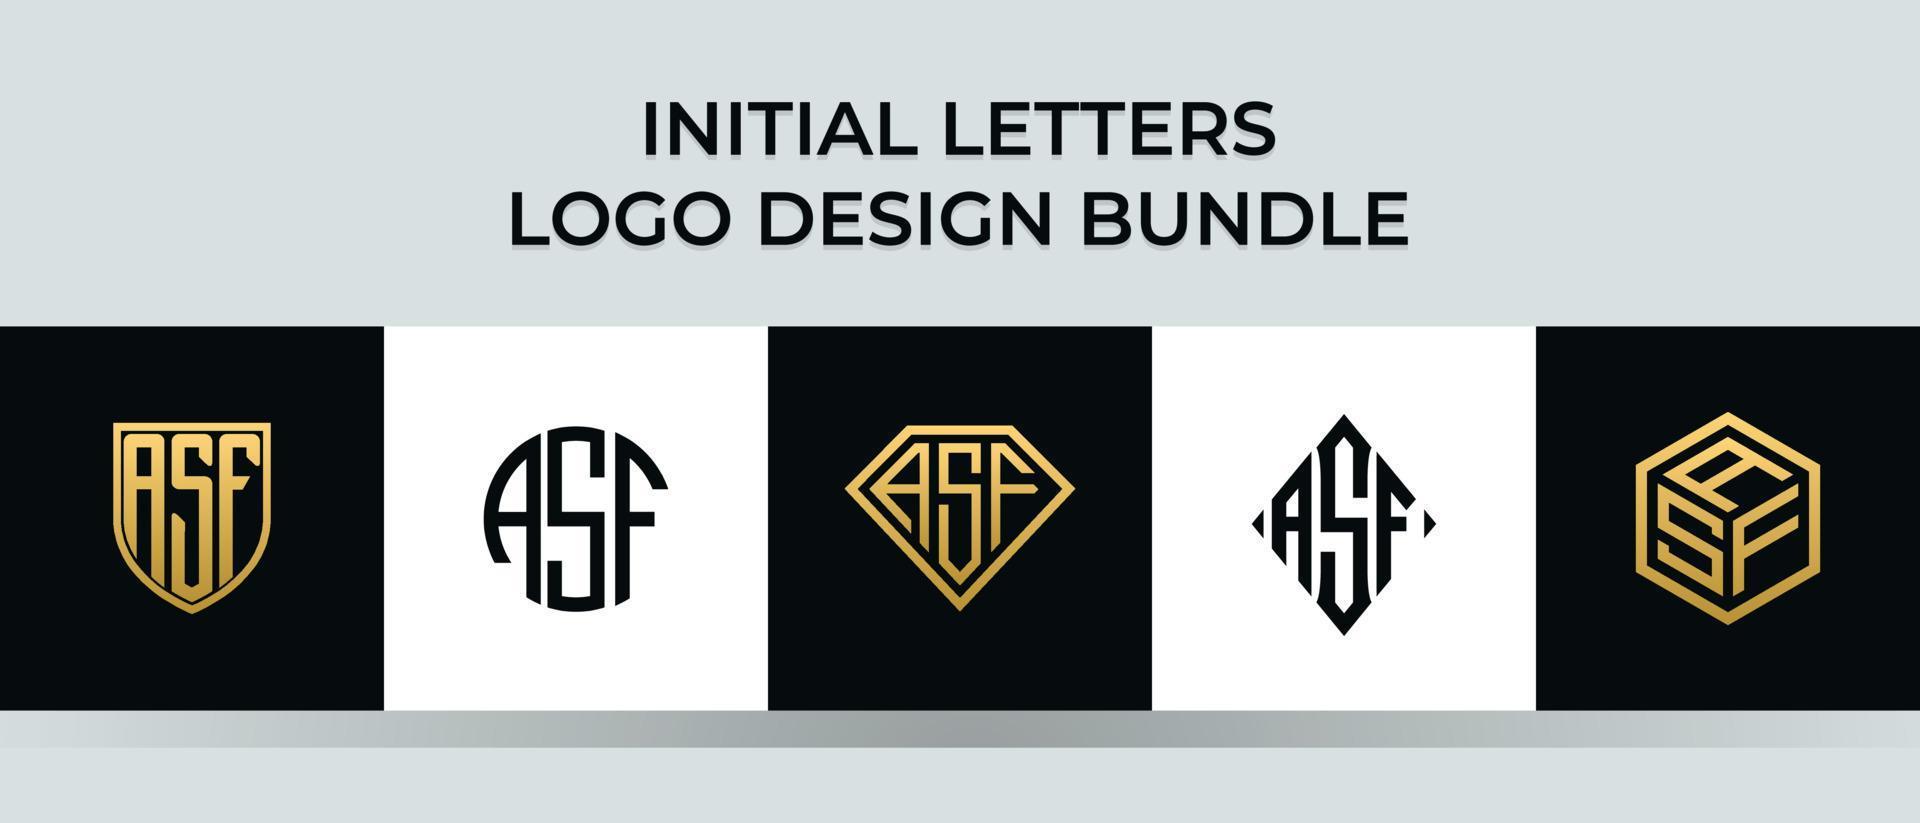 beginletters asf logo ontwerpen bundel vector